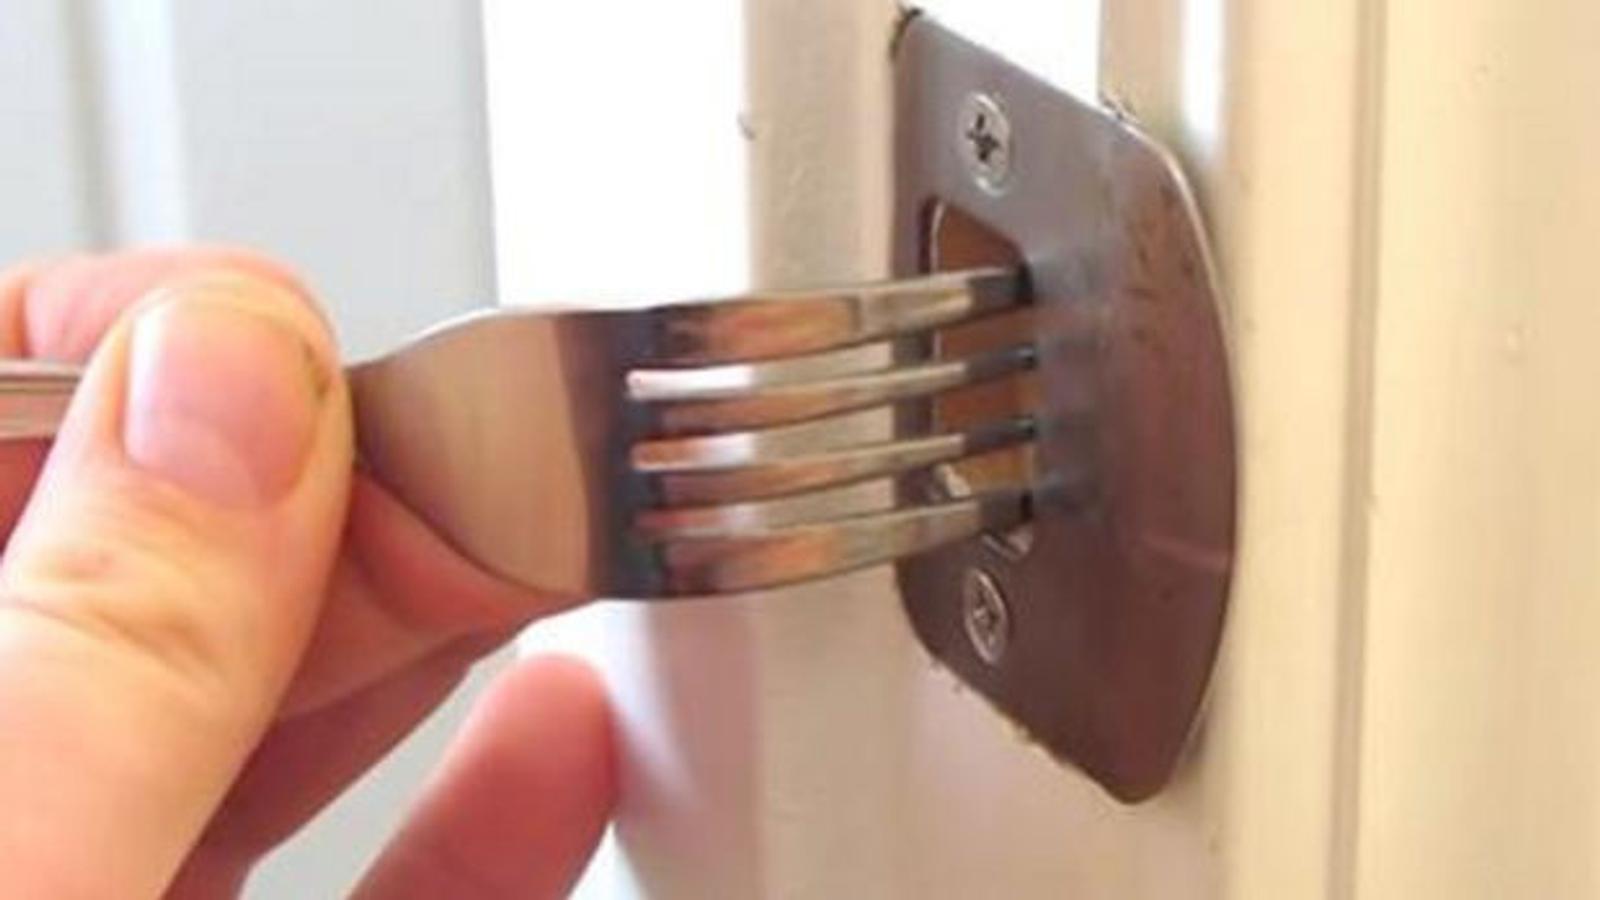 Empêchez les voleurs de s'introduire dans votre domicile à l'aide d'une fourchette